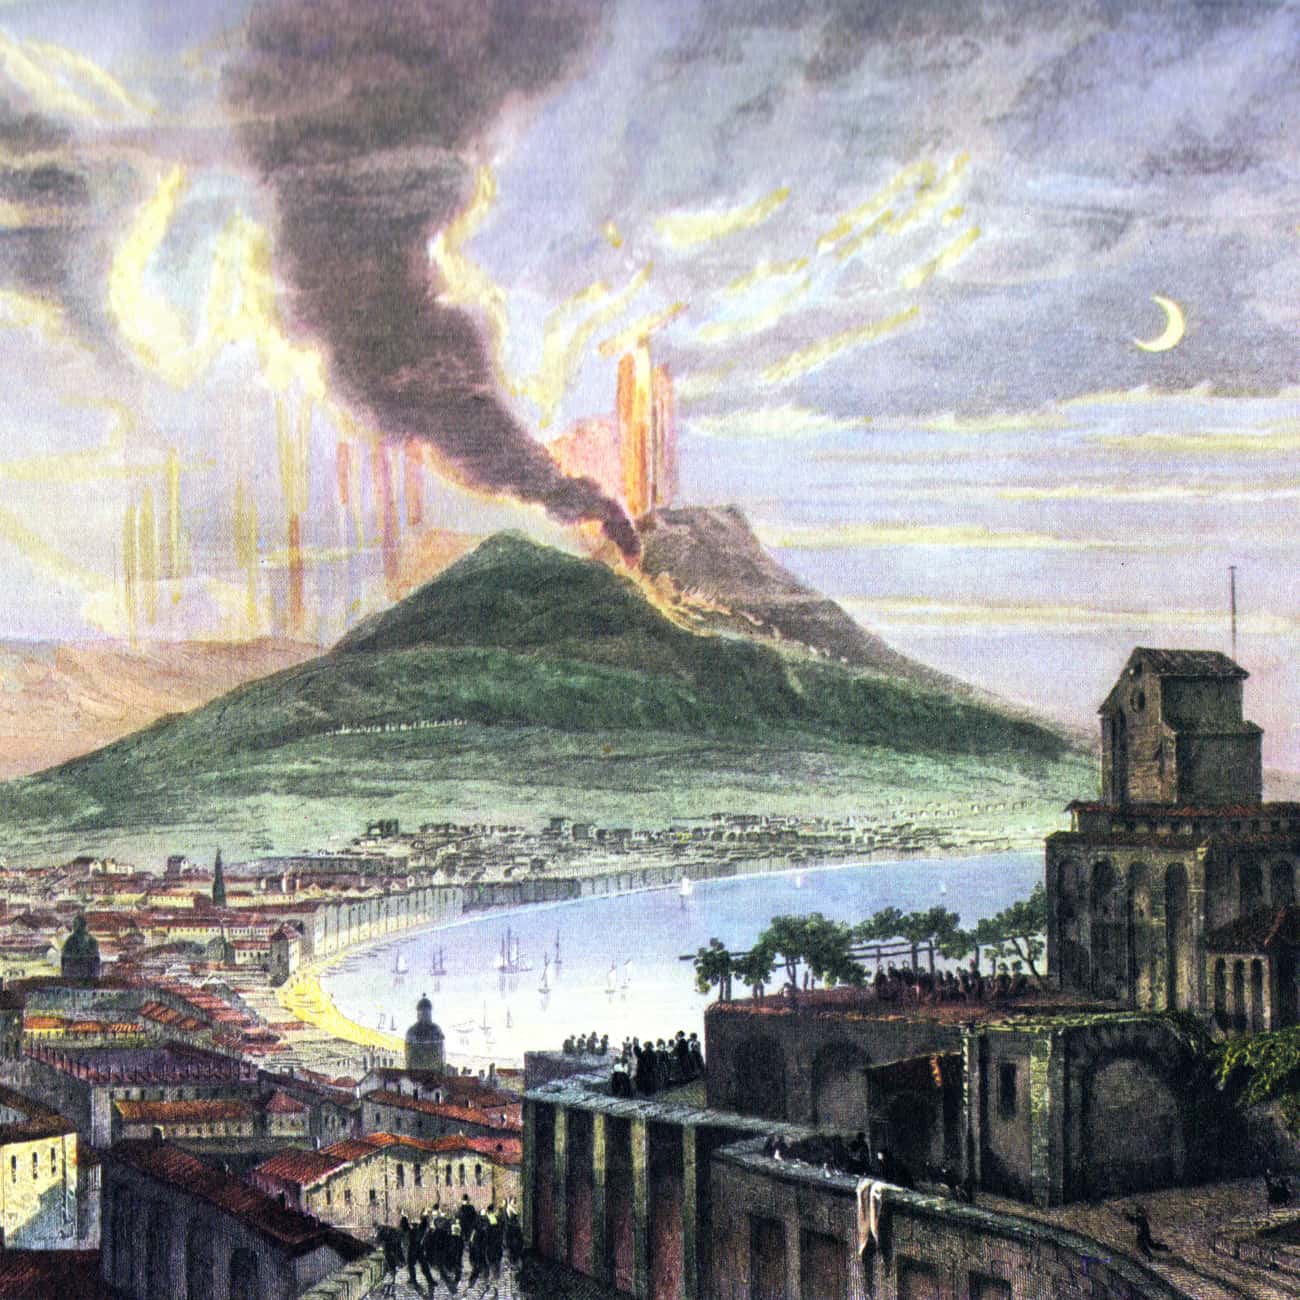 Mount Vesuvius